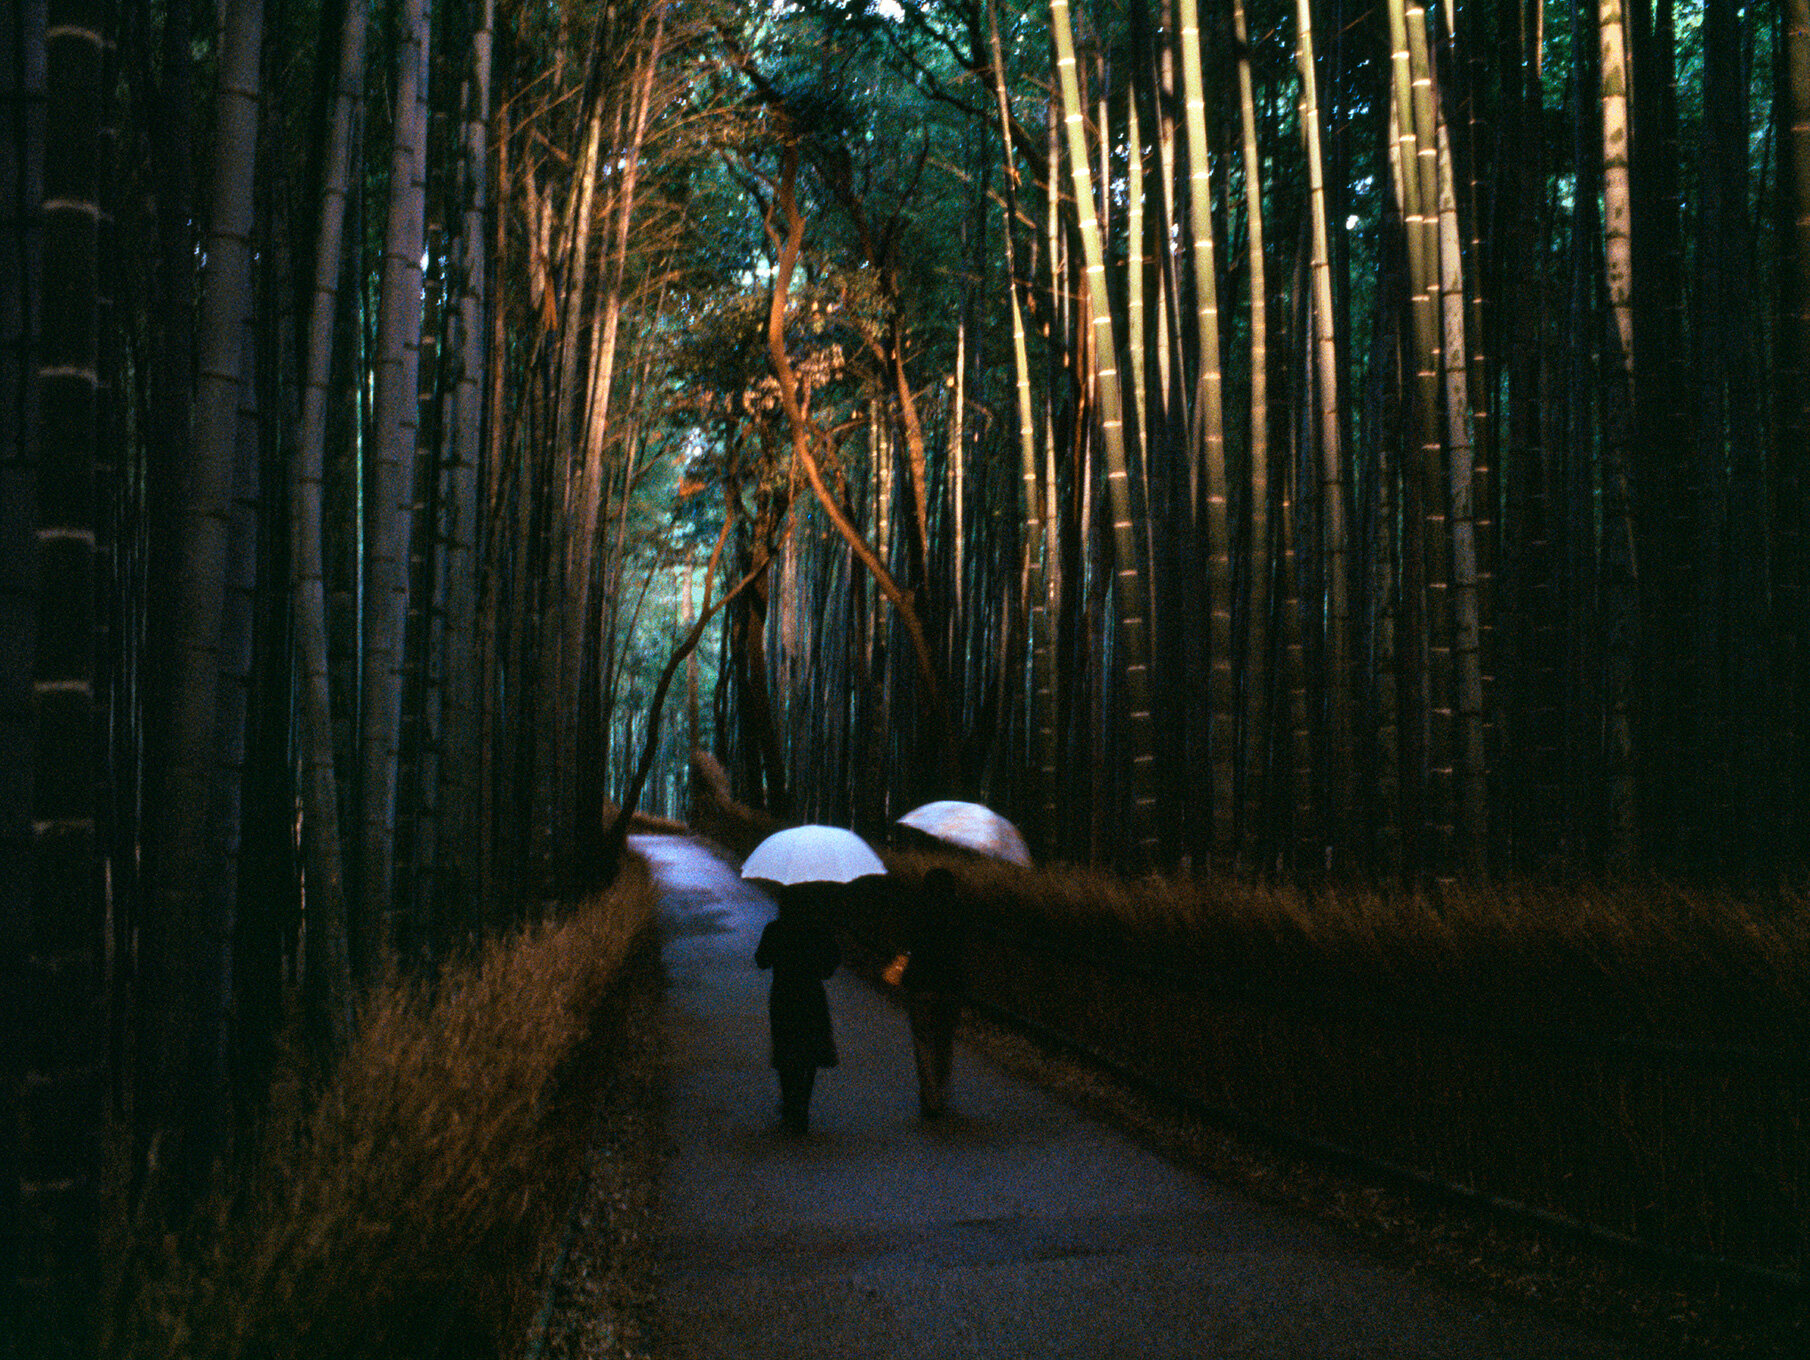   Bamboo grove,  Arashiyama, 2006  